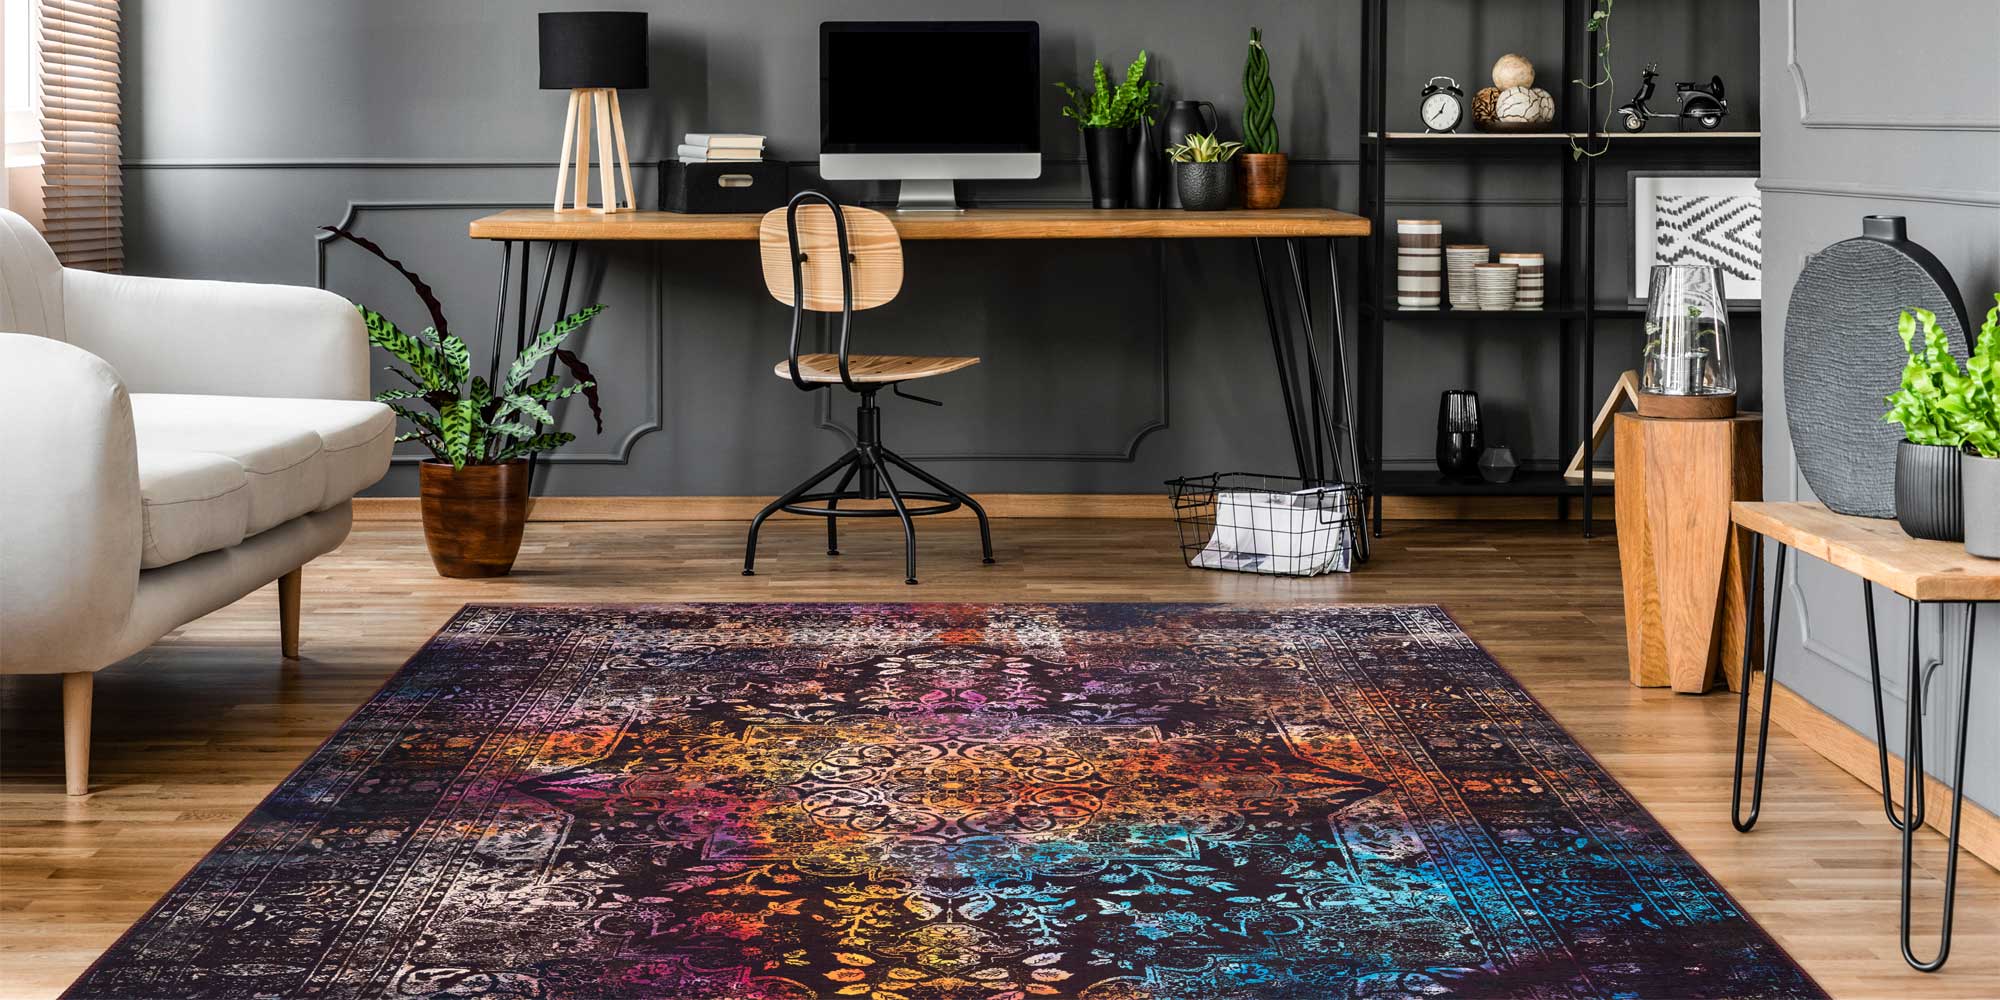 Eigenwijs Mondwater gek Kleurrijk Perzisch tapijt kopen? | Vloerkleden inspiratie |  kameraankleden.nl